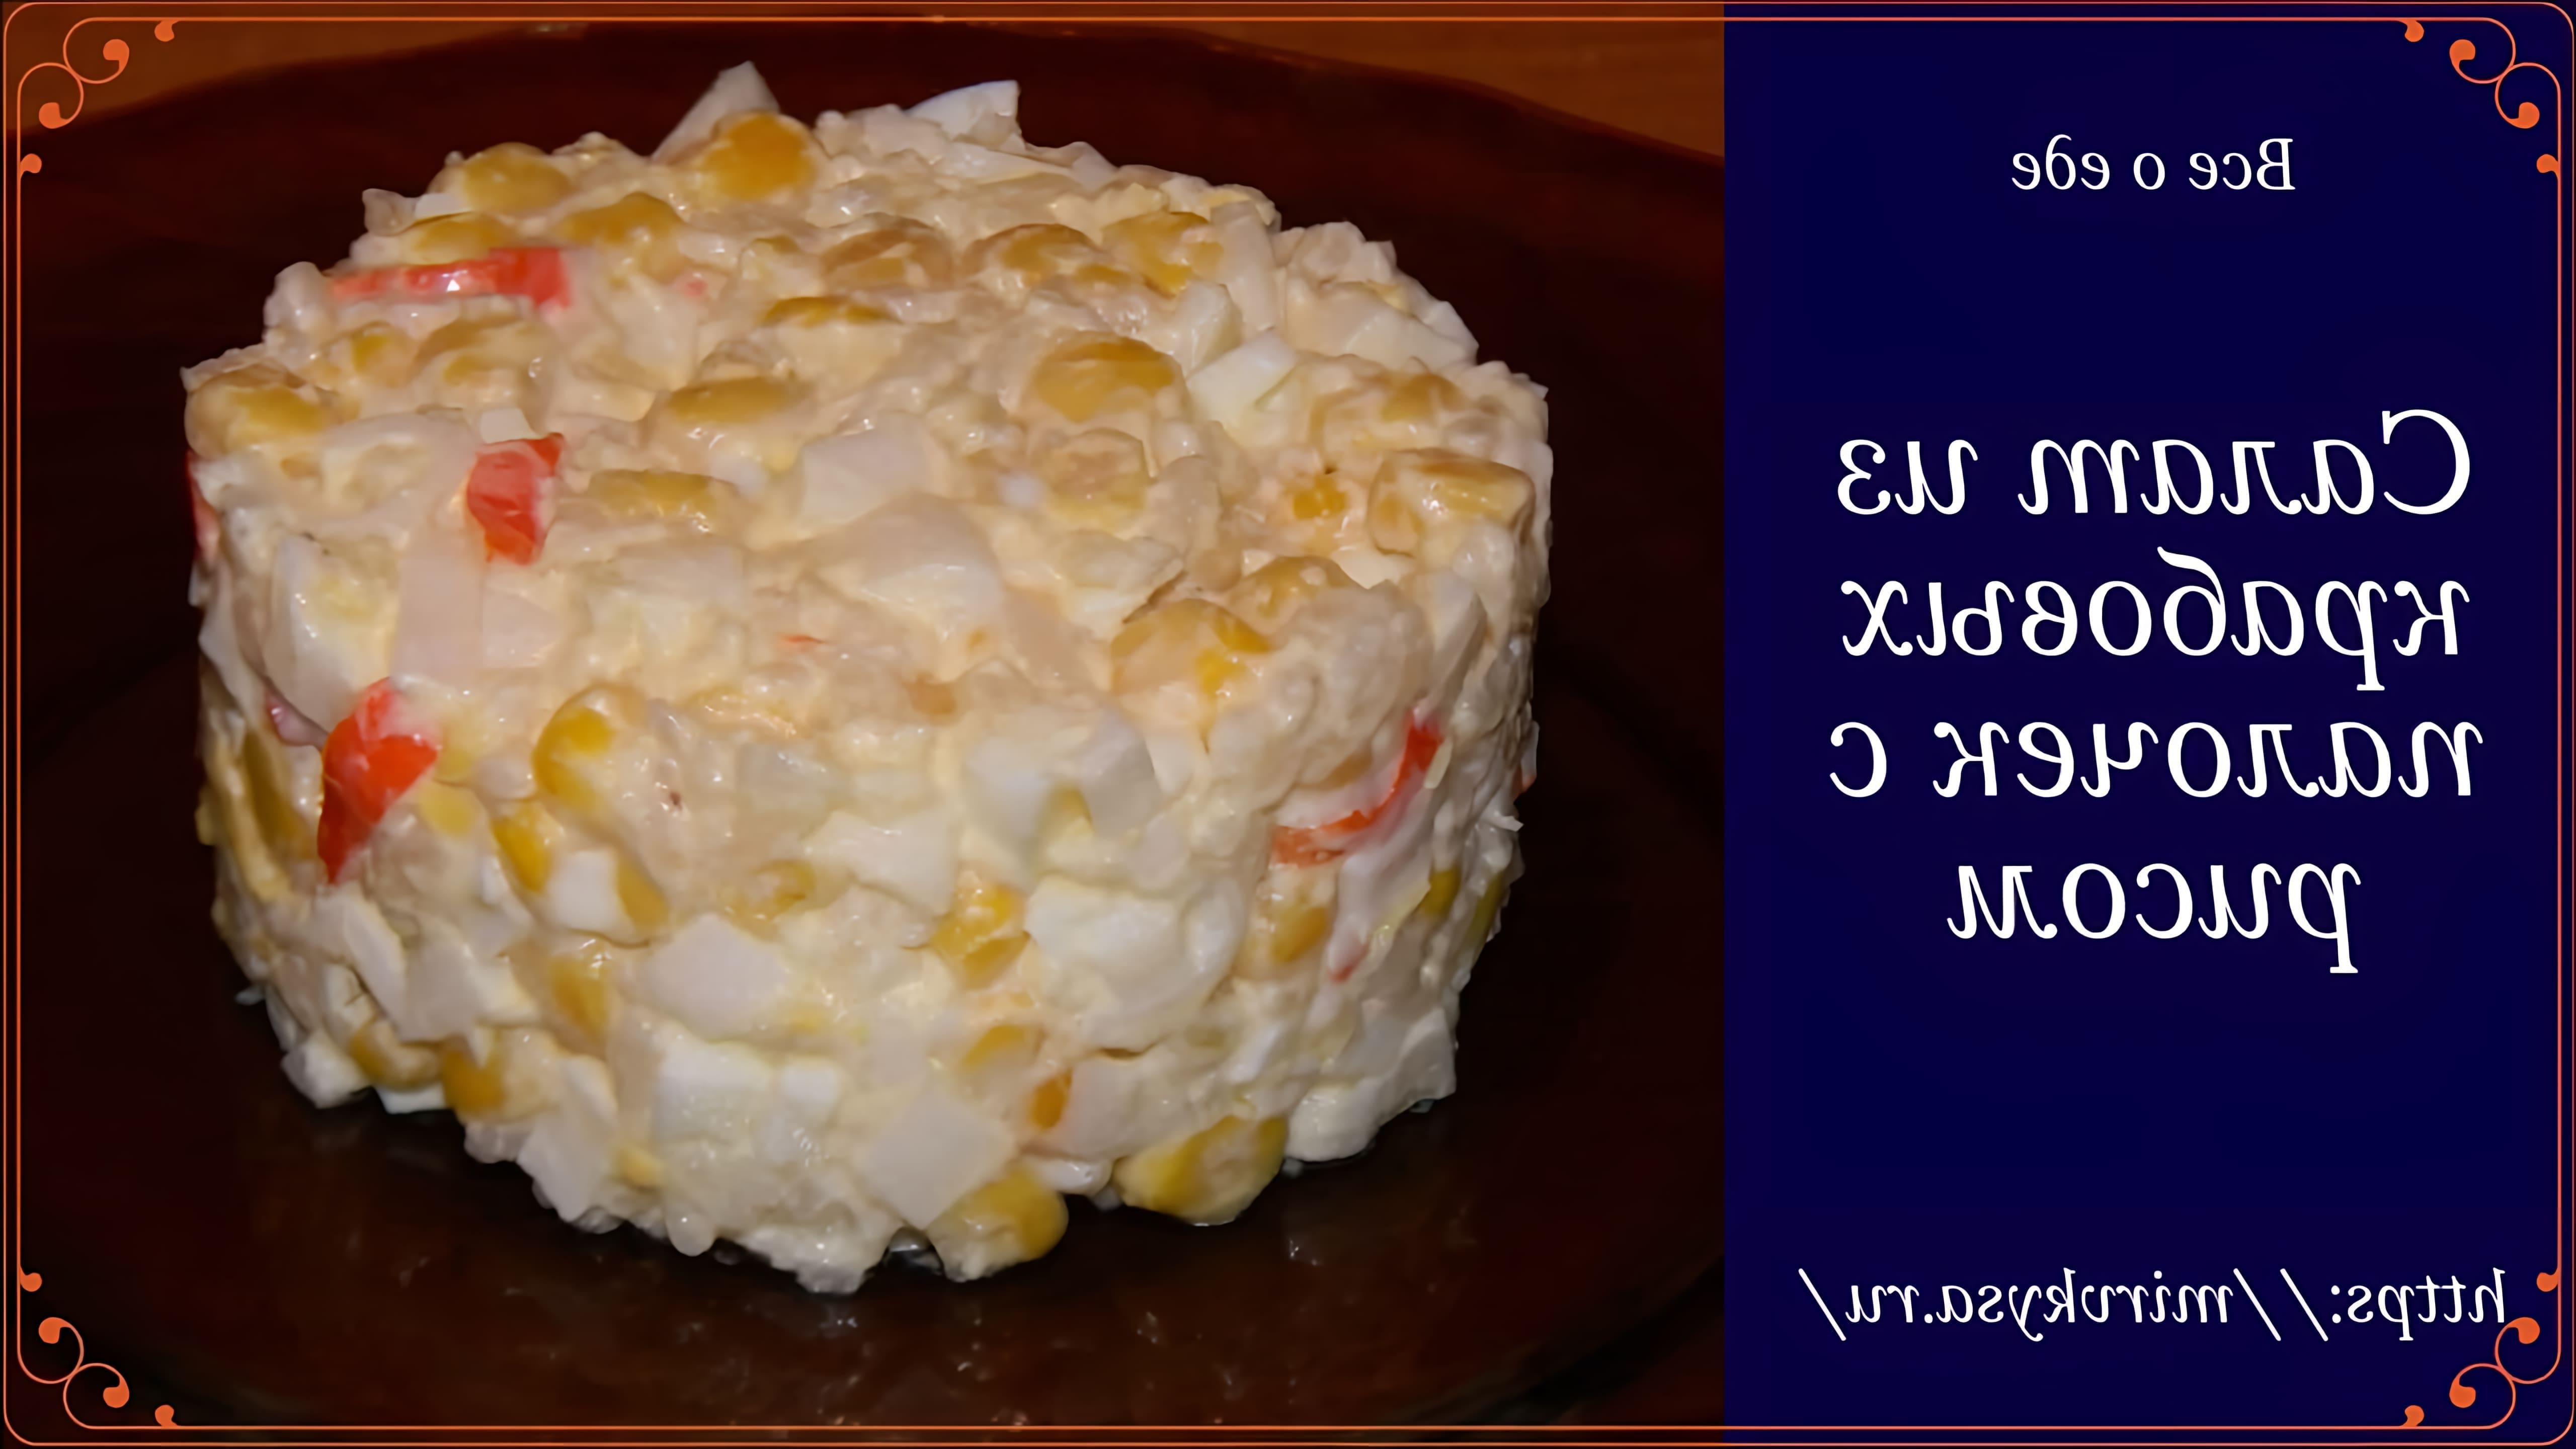 Салат из крабовых палочек с рисом - это вкусное и простое блюдо, которое можно приготовить в домашних условиях